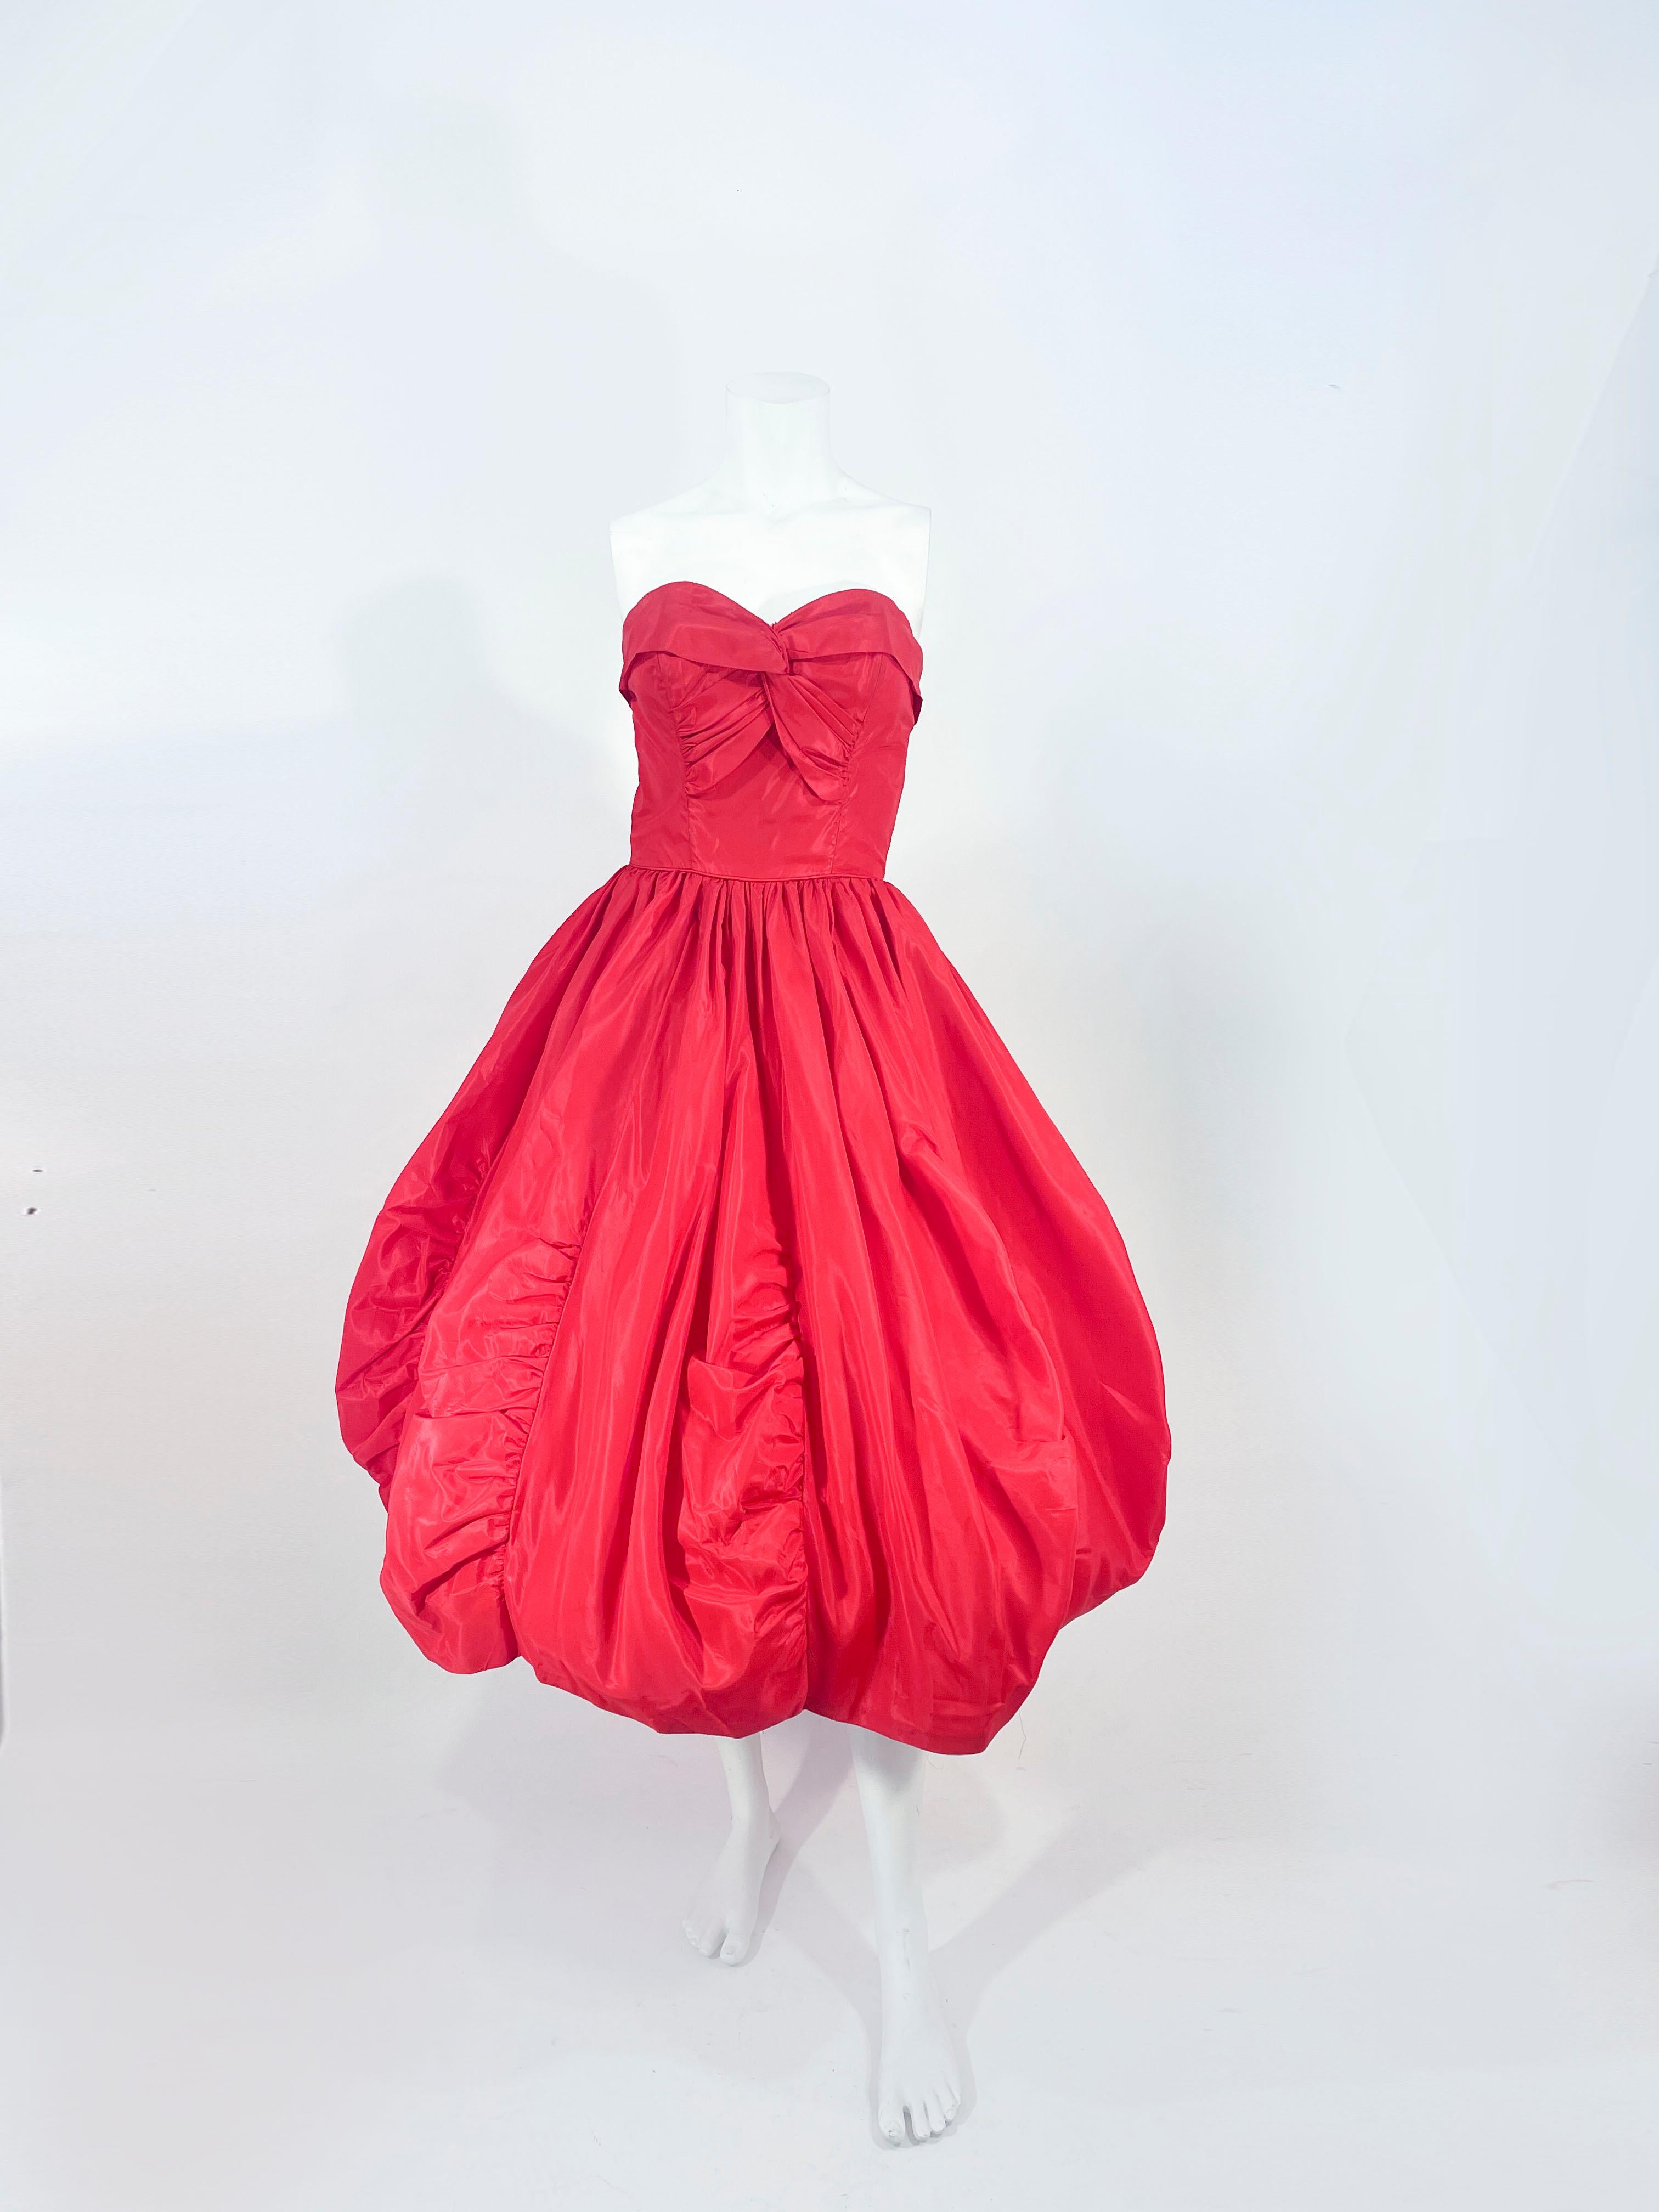 Rotes Partykleid aus Taft der 1950er Jahre mit gerüschtem und getäfeltem Bubble-Saum. Das Mieder ist mit Falten und Raffungen verziert, hat innenliegende Stäbchen für mehr Struktur und eine Taillenschürze. 

Der Rücken hat einen Metallreißverschluss